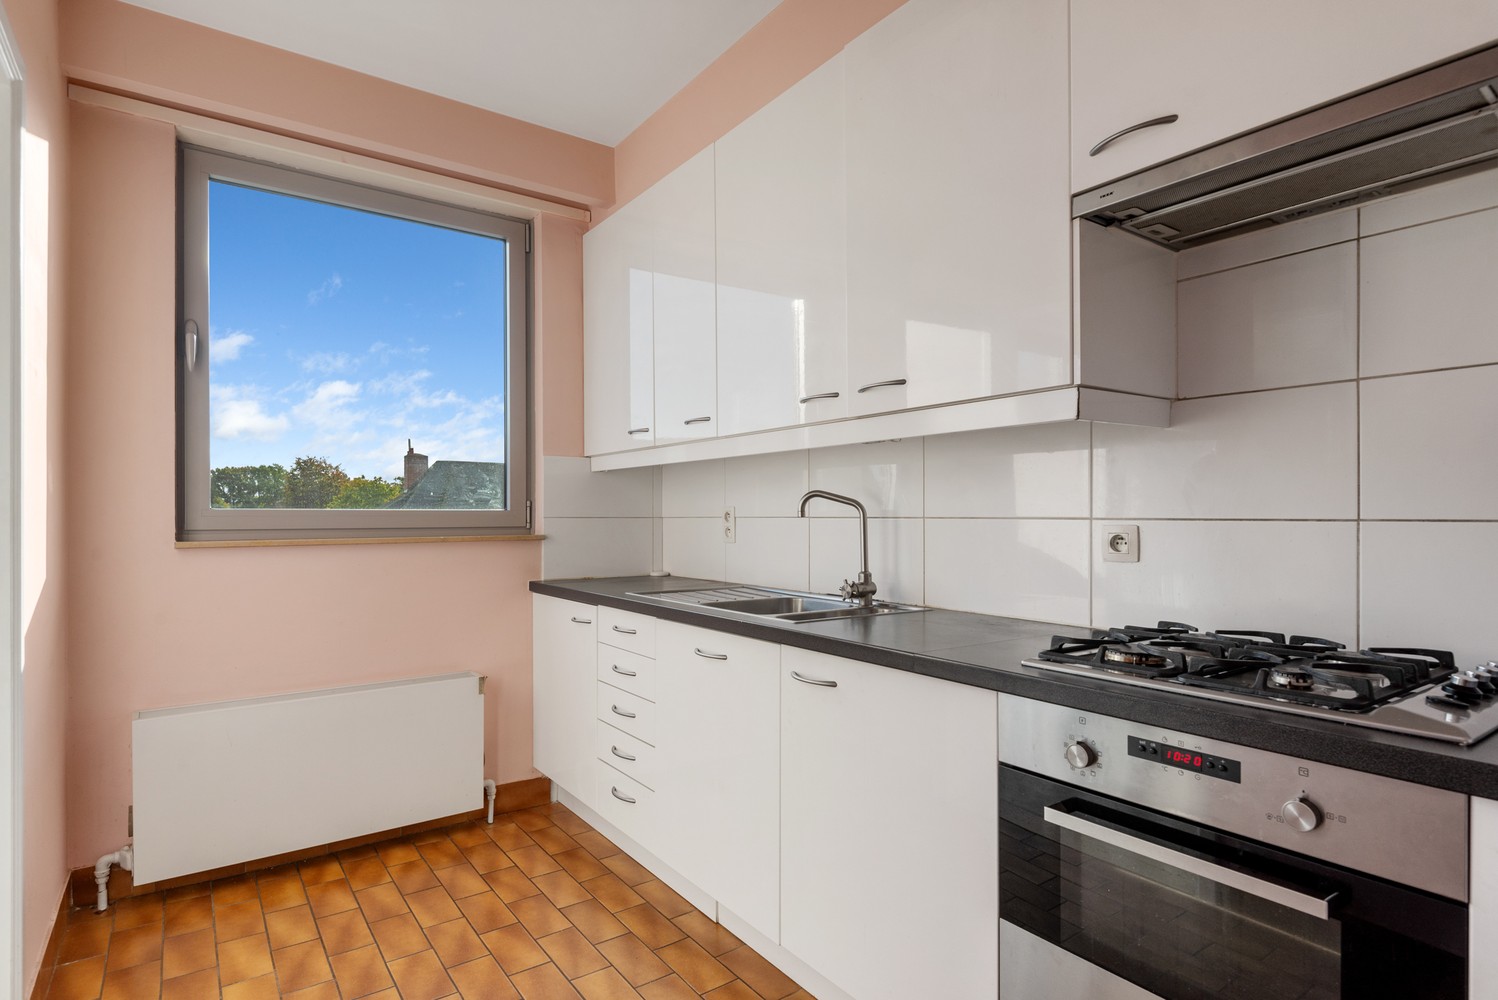 Instapklaar appartement met 2 slaapkamers, garagebox & terras in Borsbeek! afbeelding 7